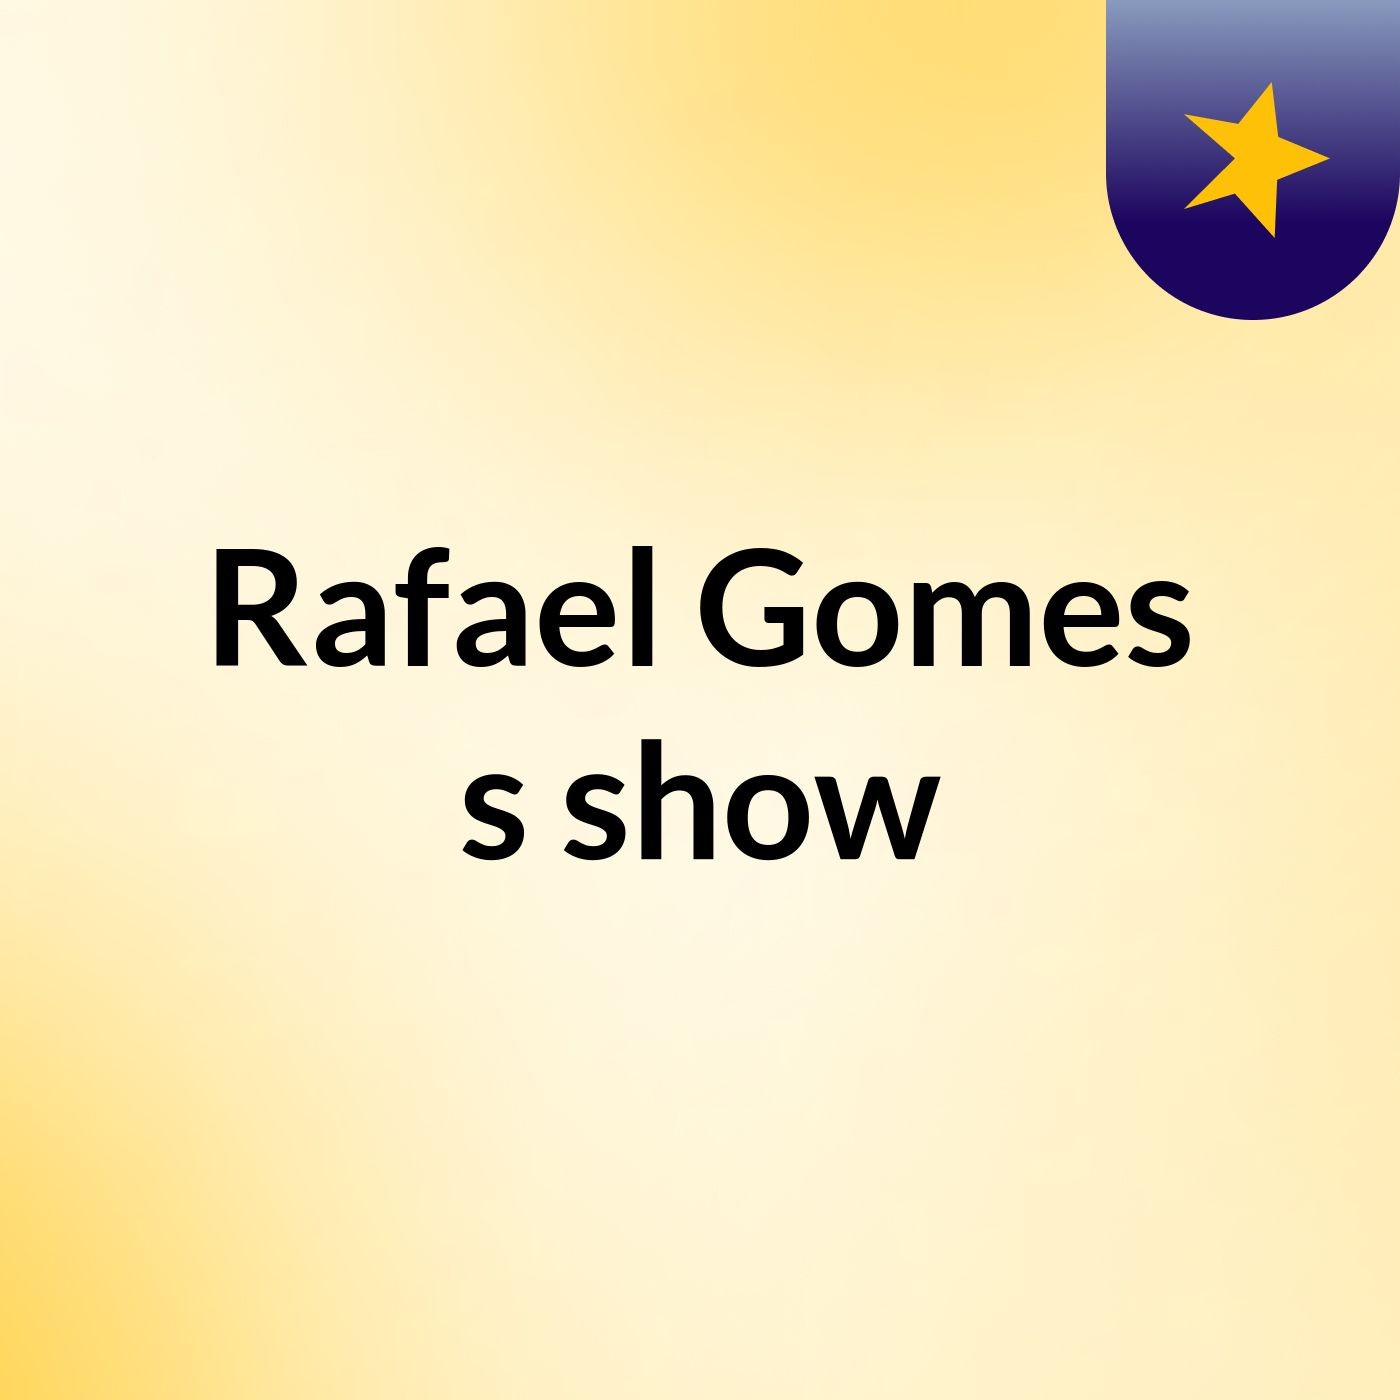 Rafael Gomes's show